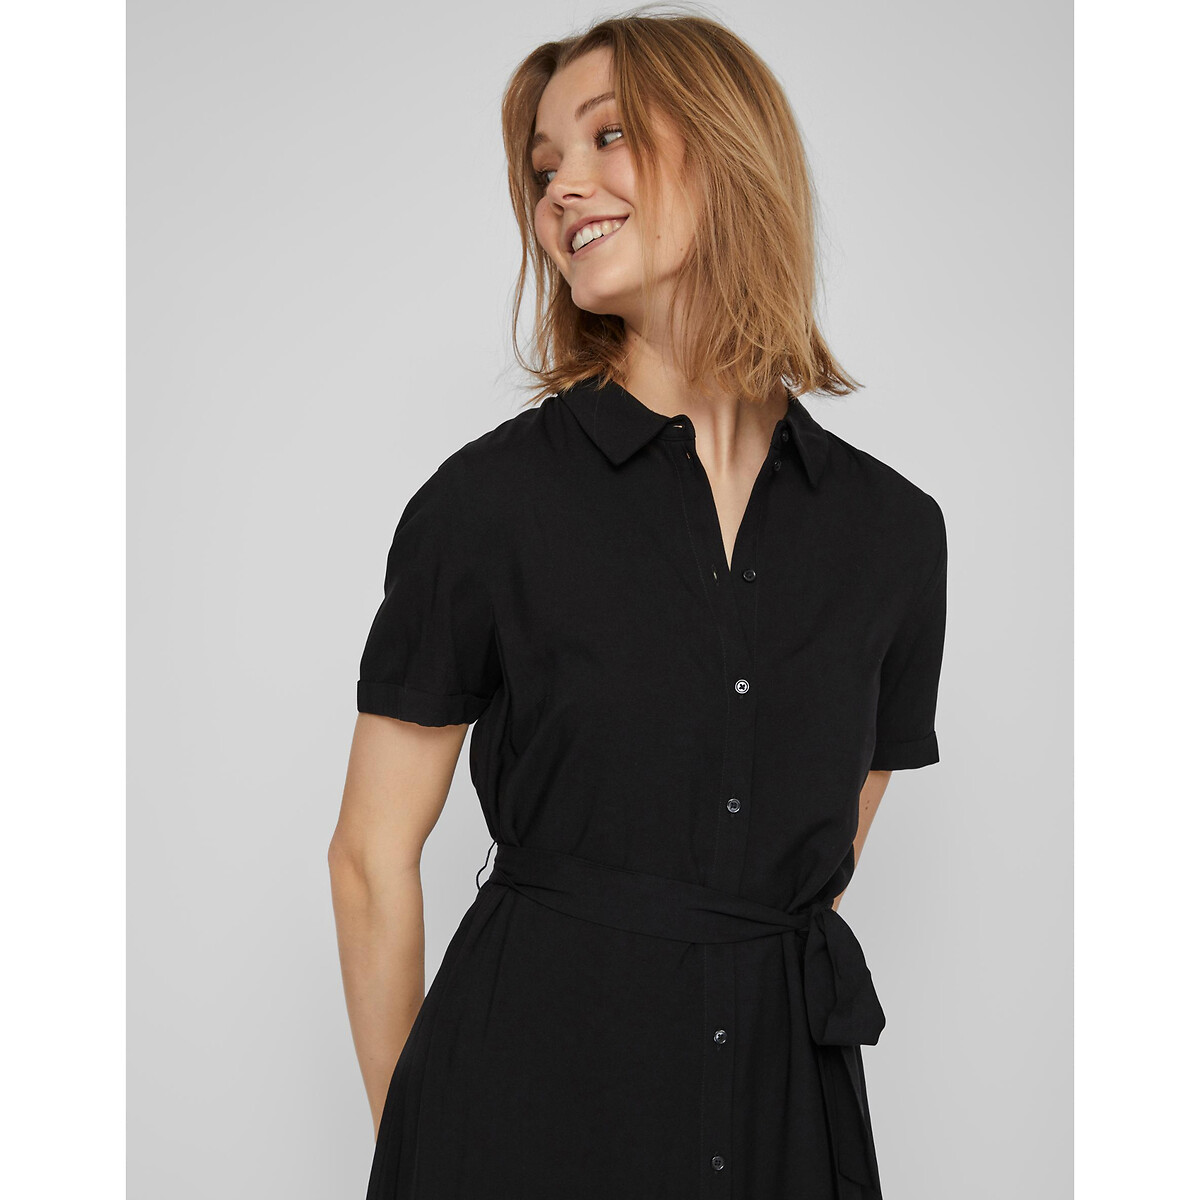 Платье-рубашка Короткие рукава с завязками 40 черный LaRedoute, размер 40 - фото 2